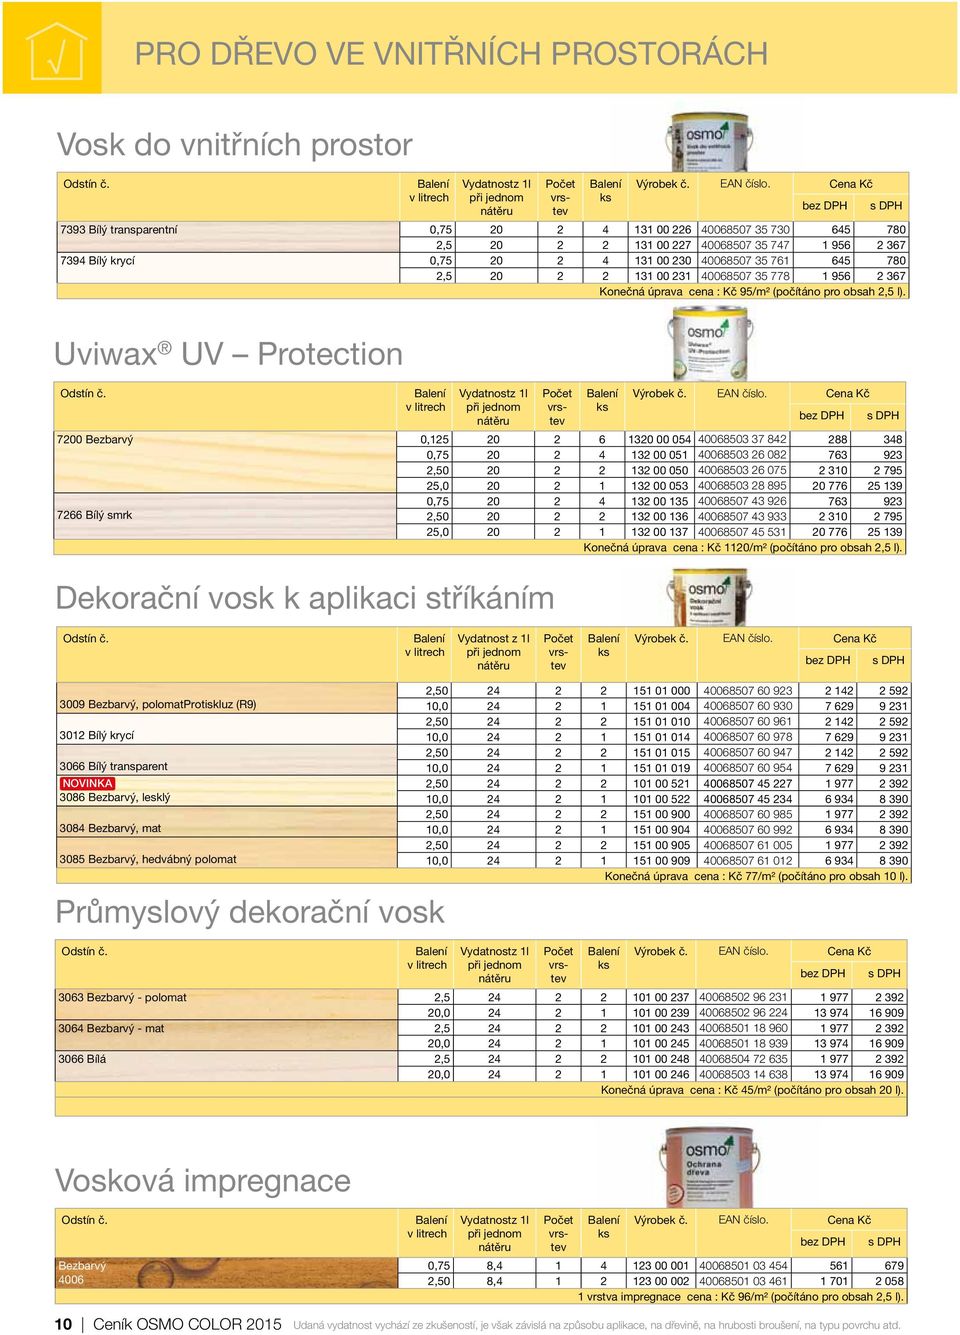 Uviwax UV Protection Vydatnostz 1l Dekorační vosk k aplikaci stříkáním 7200 0,125 20 2 6 1320 00 054 40068503 37 842 288 348 0,75 20 2 4 132 00 051 40068503 26 082 763 923 2,50 20 2 2 132 00 050